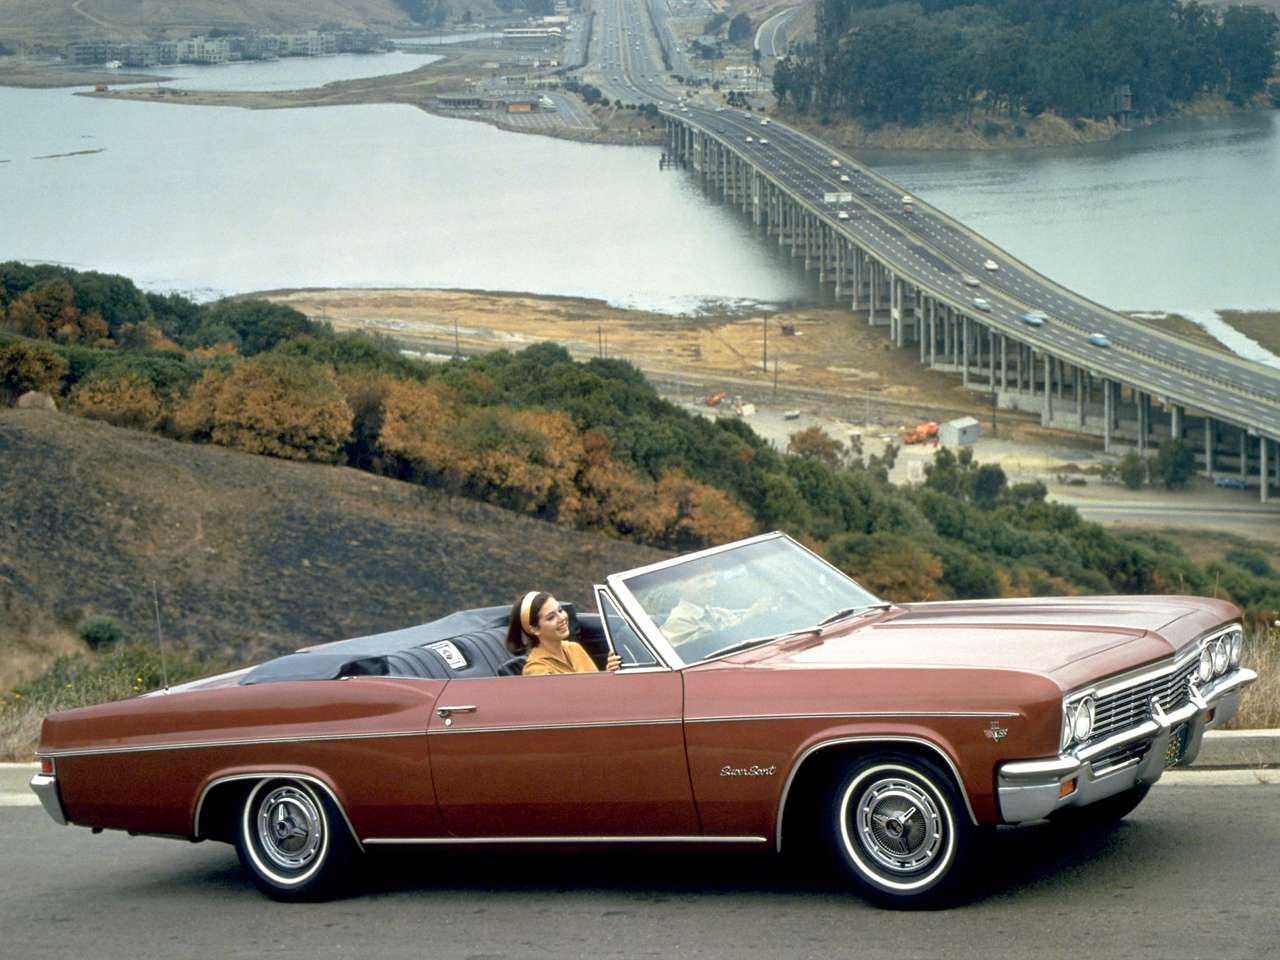 1966 Chevrolet Impala Super Sport 327 Cabriolet pussel på nätet